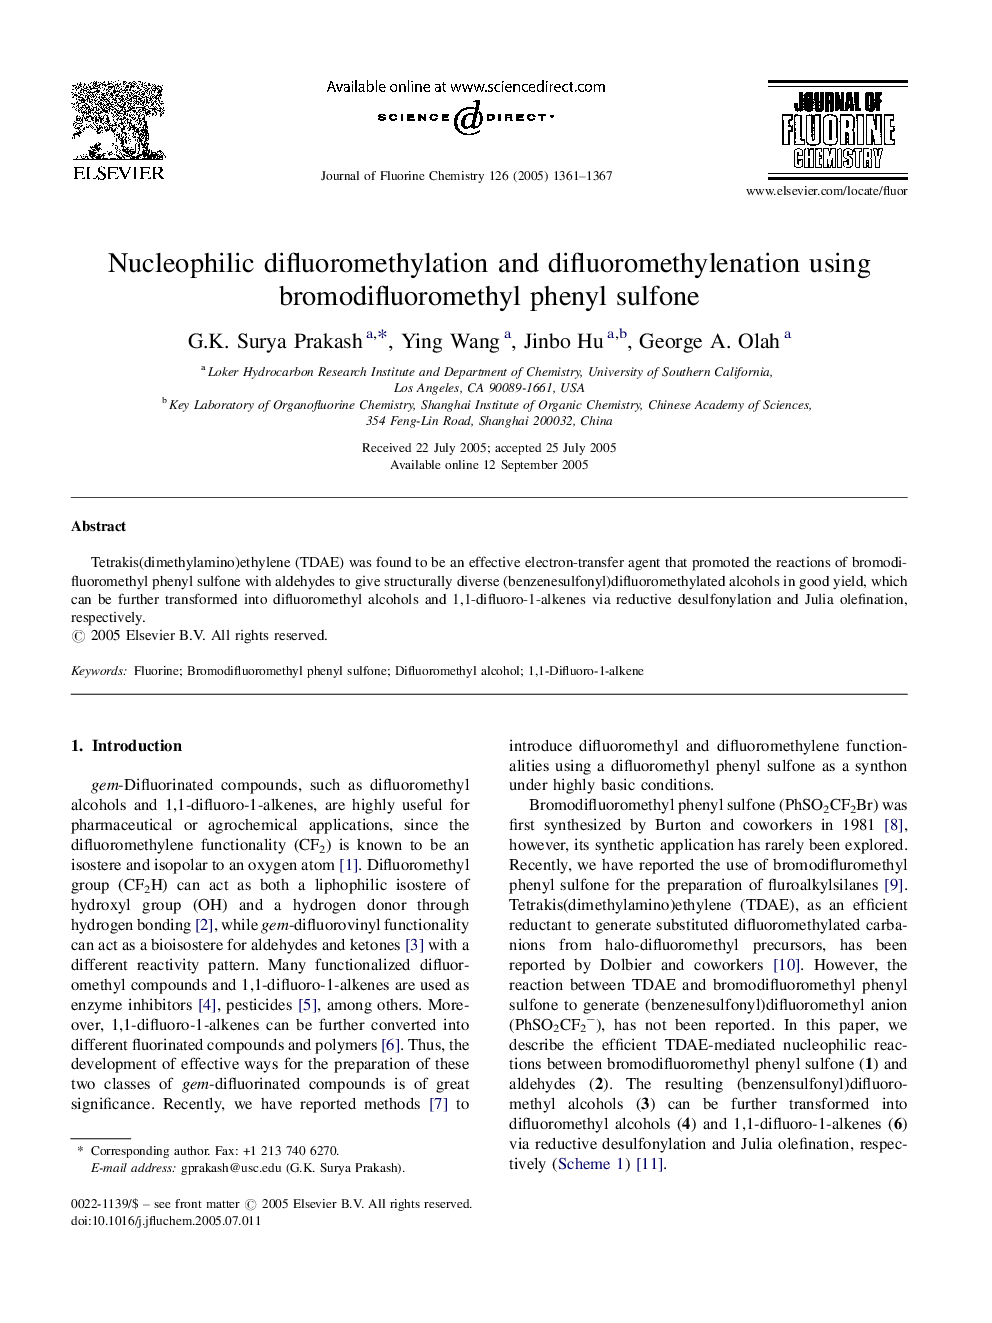 Nucleophilic difluoromethylation and difluoromethylenation using bromodifluoromethyl phenyl sulfone